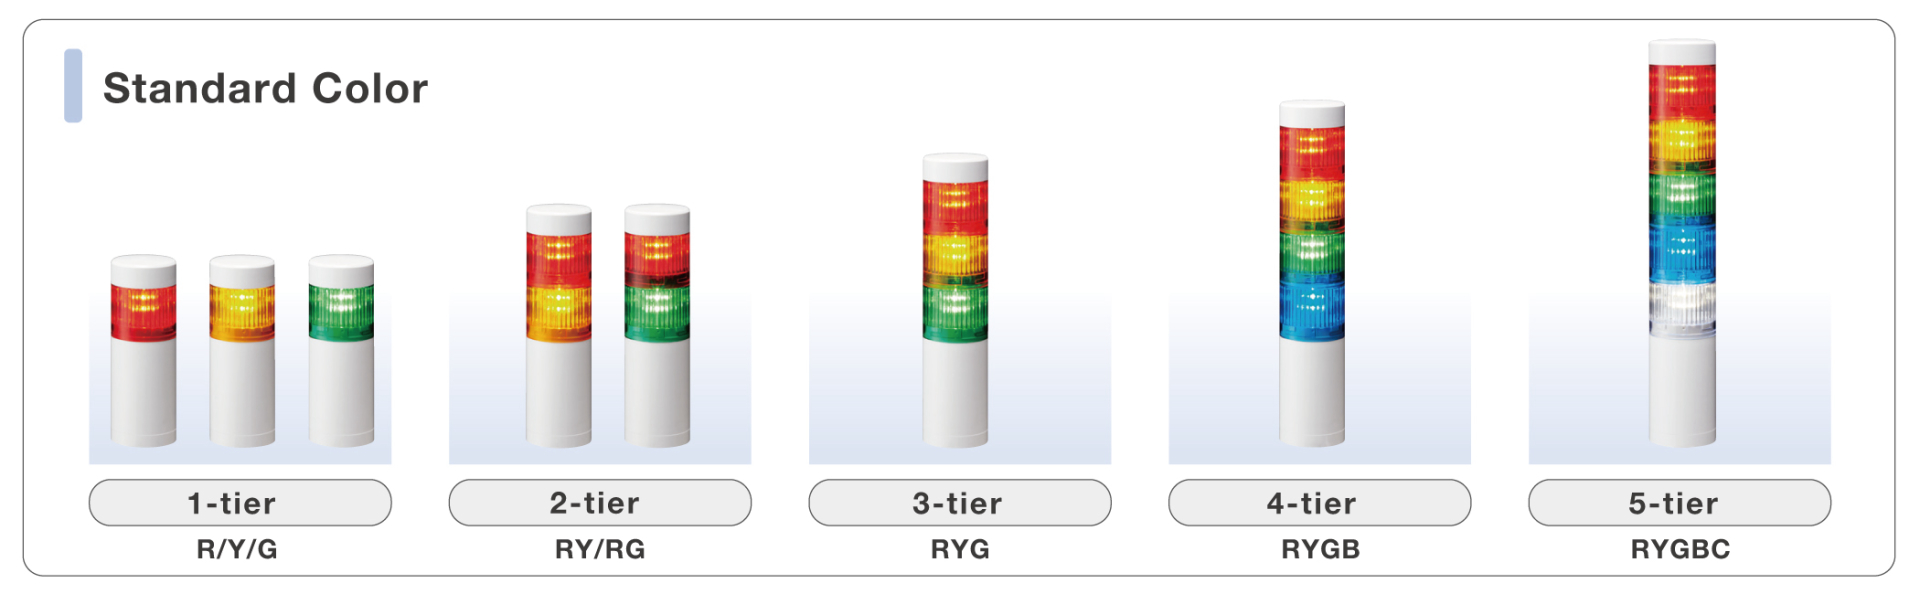 LR10-5M2WJNW-RYGBC Đèn tháp tín hiệu PATLITE 5 tầng Bóng LED Cấp độ bảo vệ IP66/69K